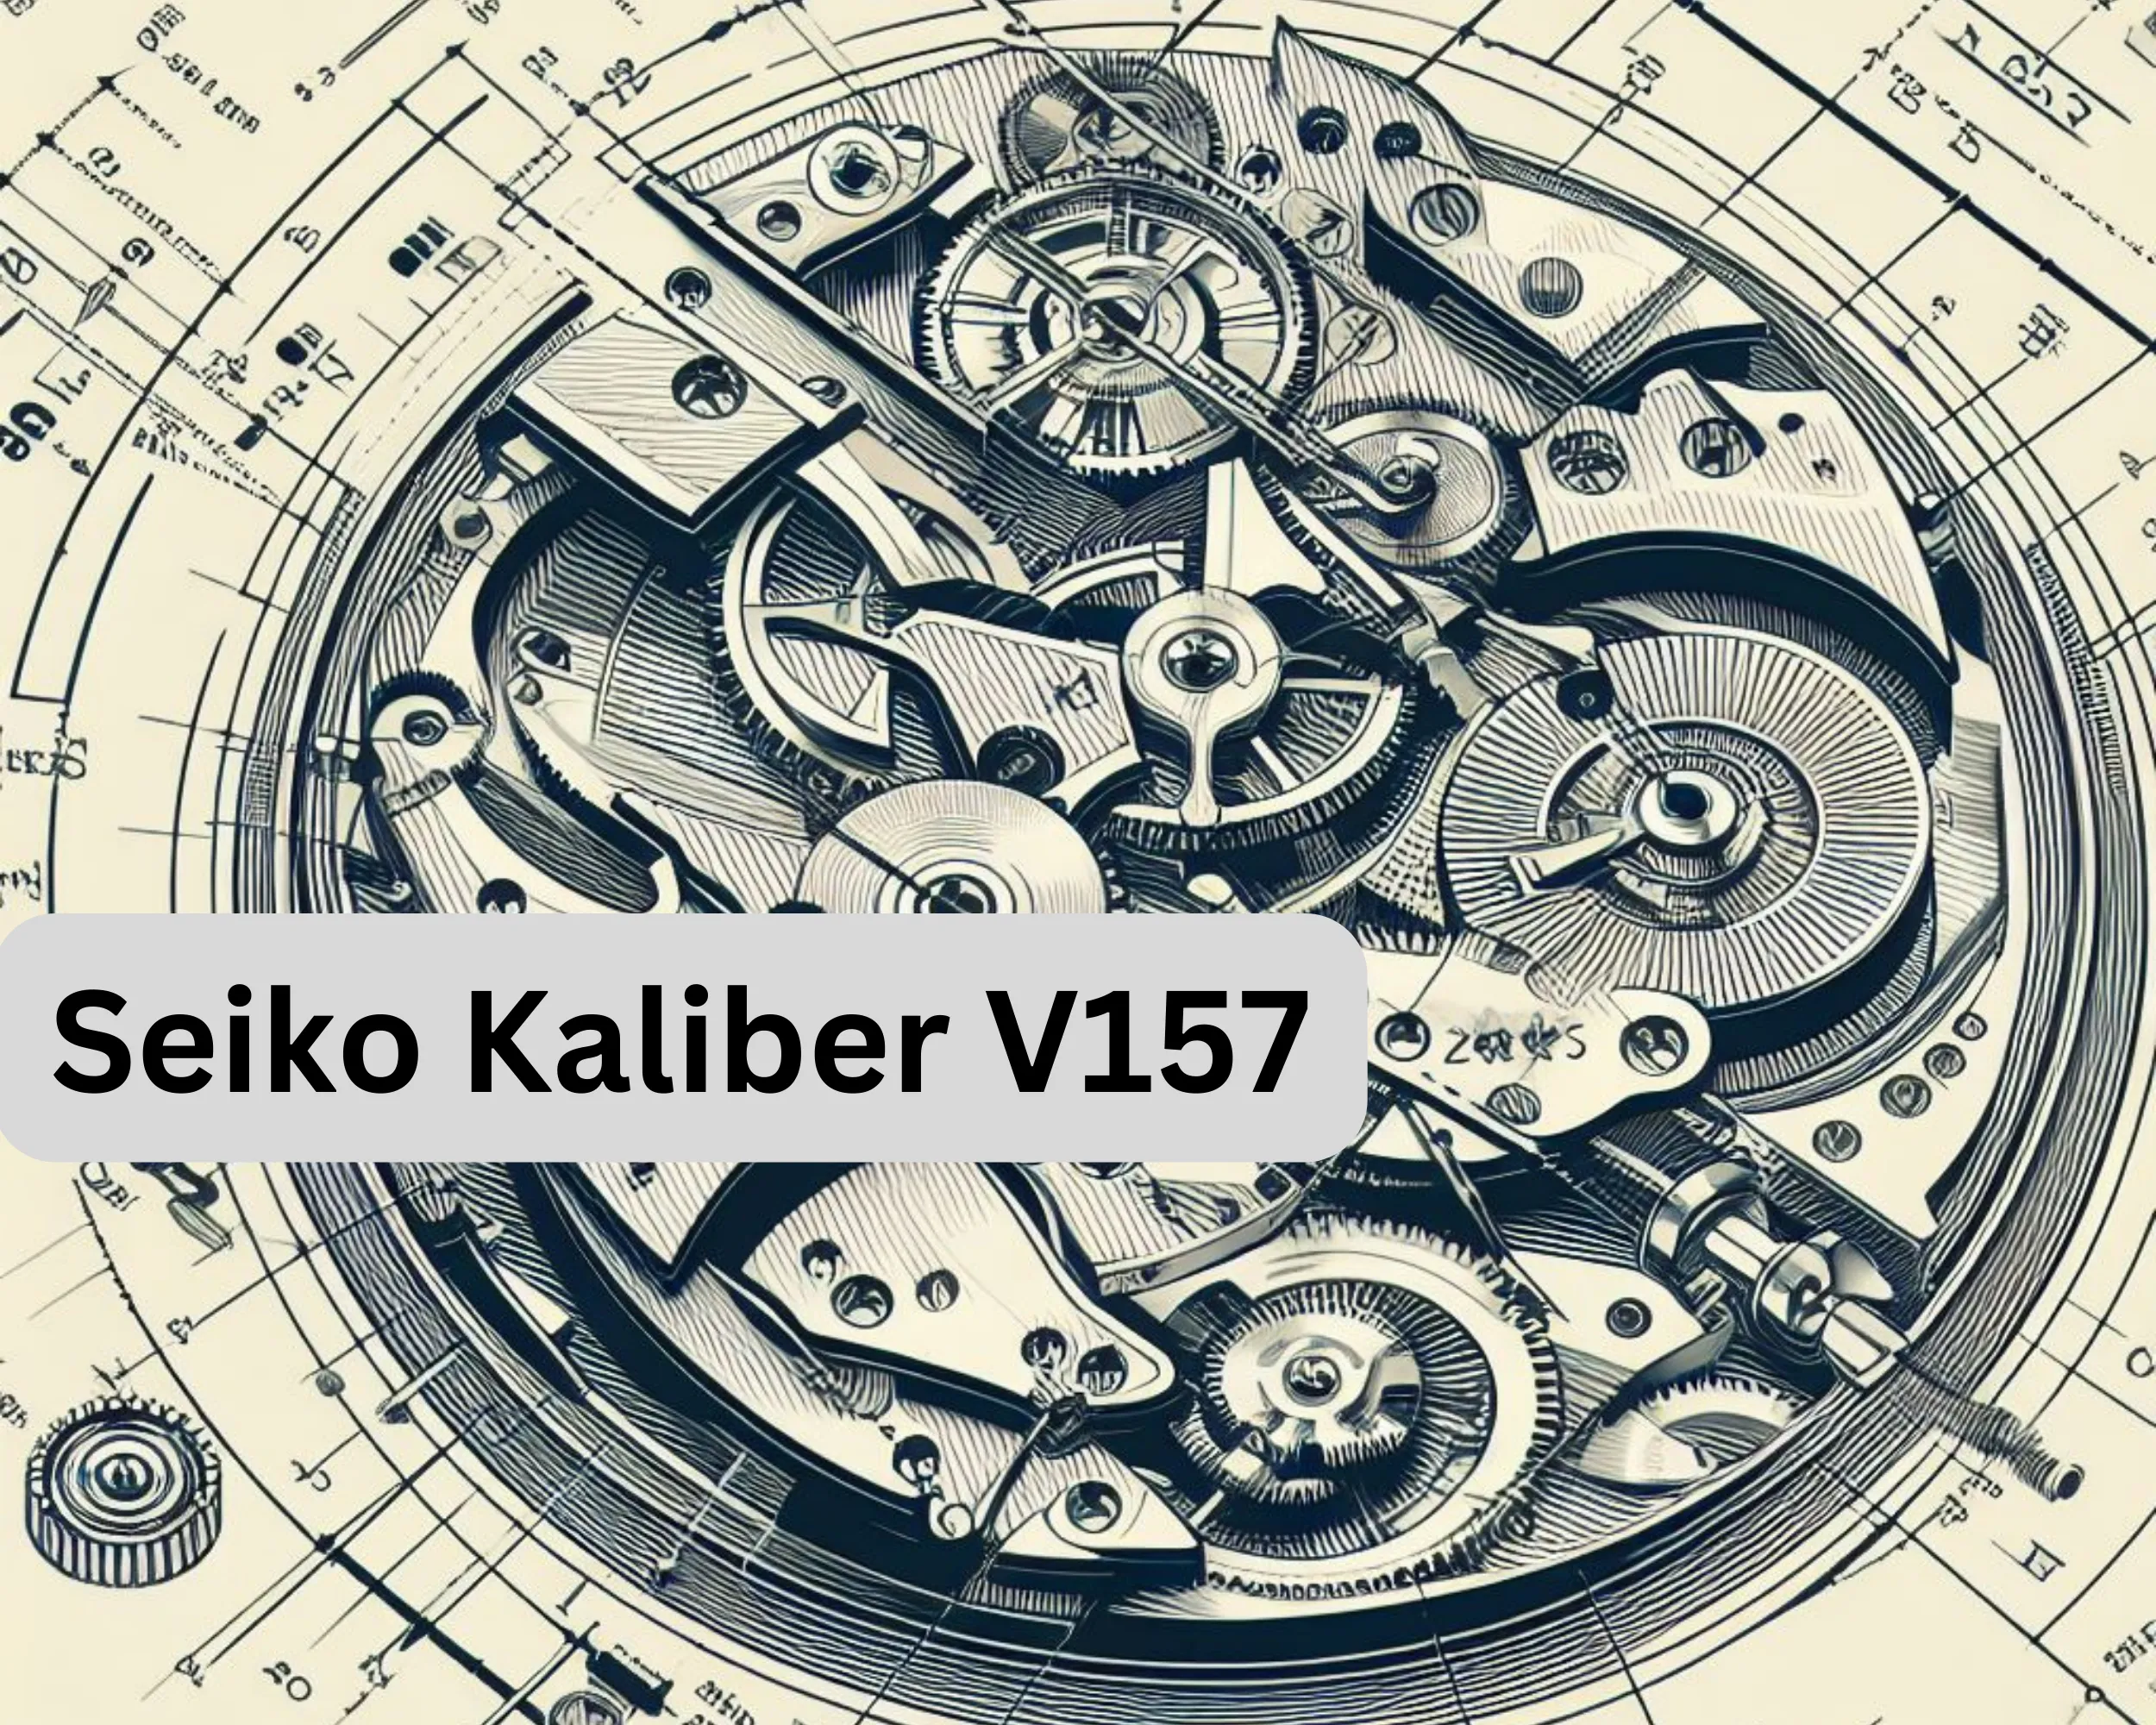 Seiko Kaliber V157